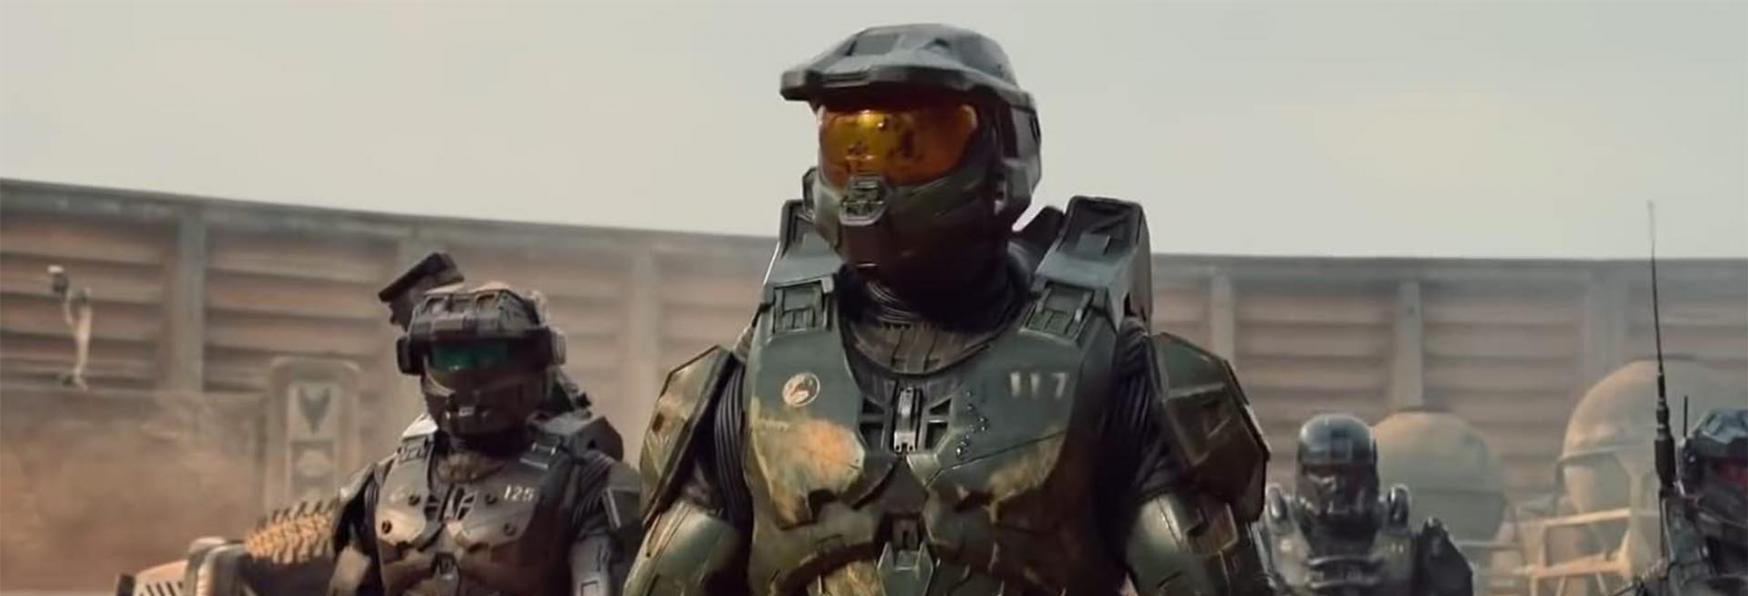 Halo: la Serie TV Live-Action sarà collegata al Videogioco? Risponde lo Showrunner